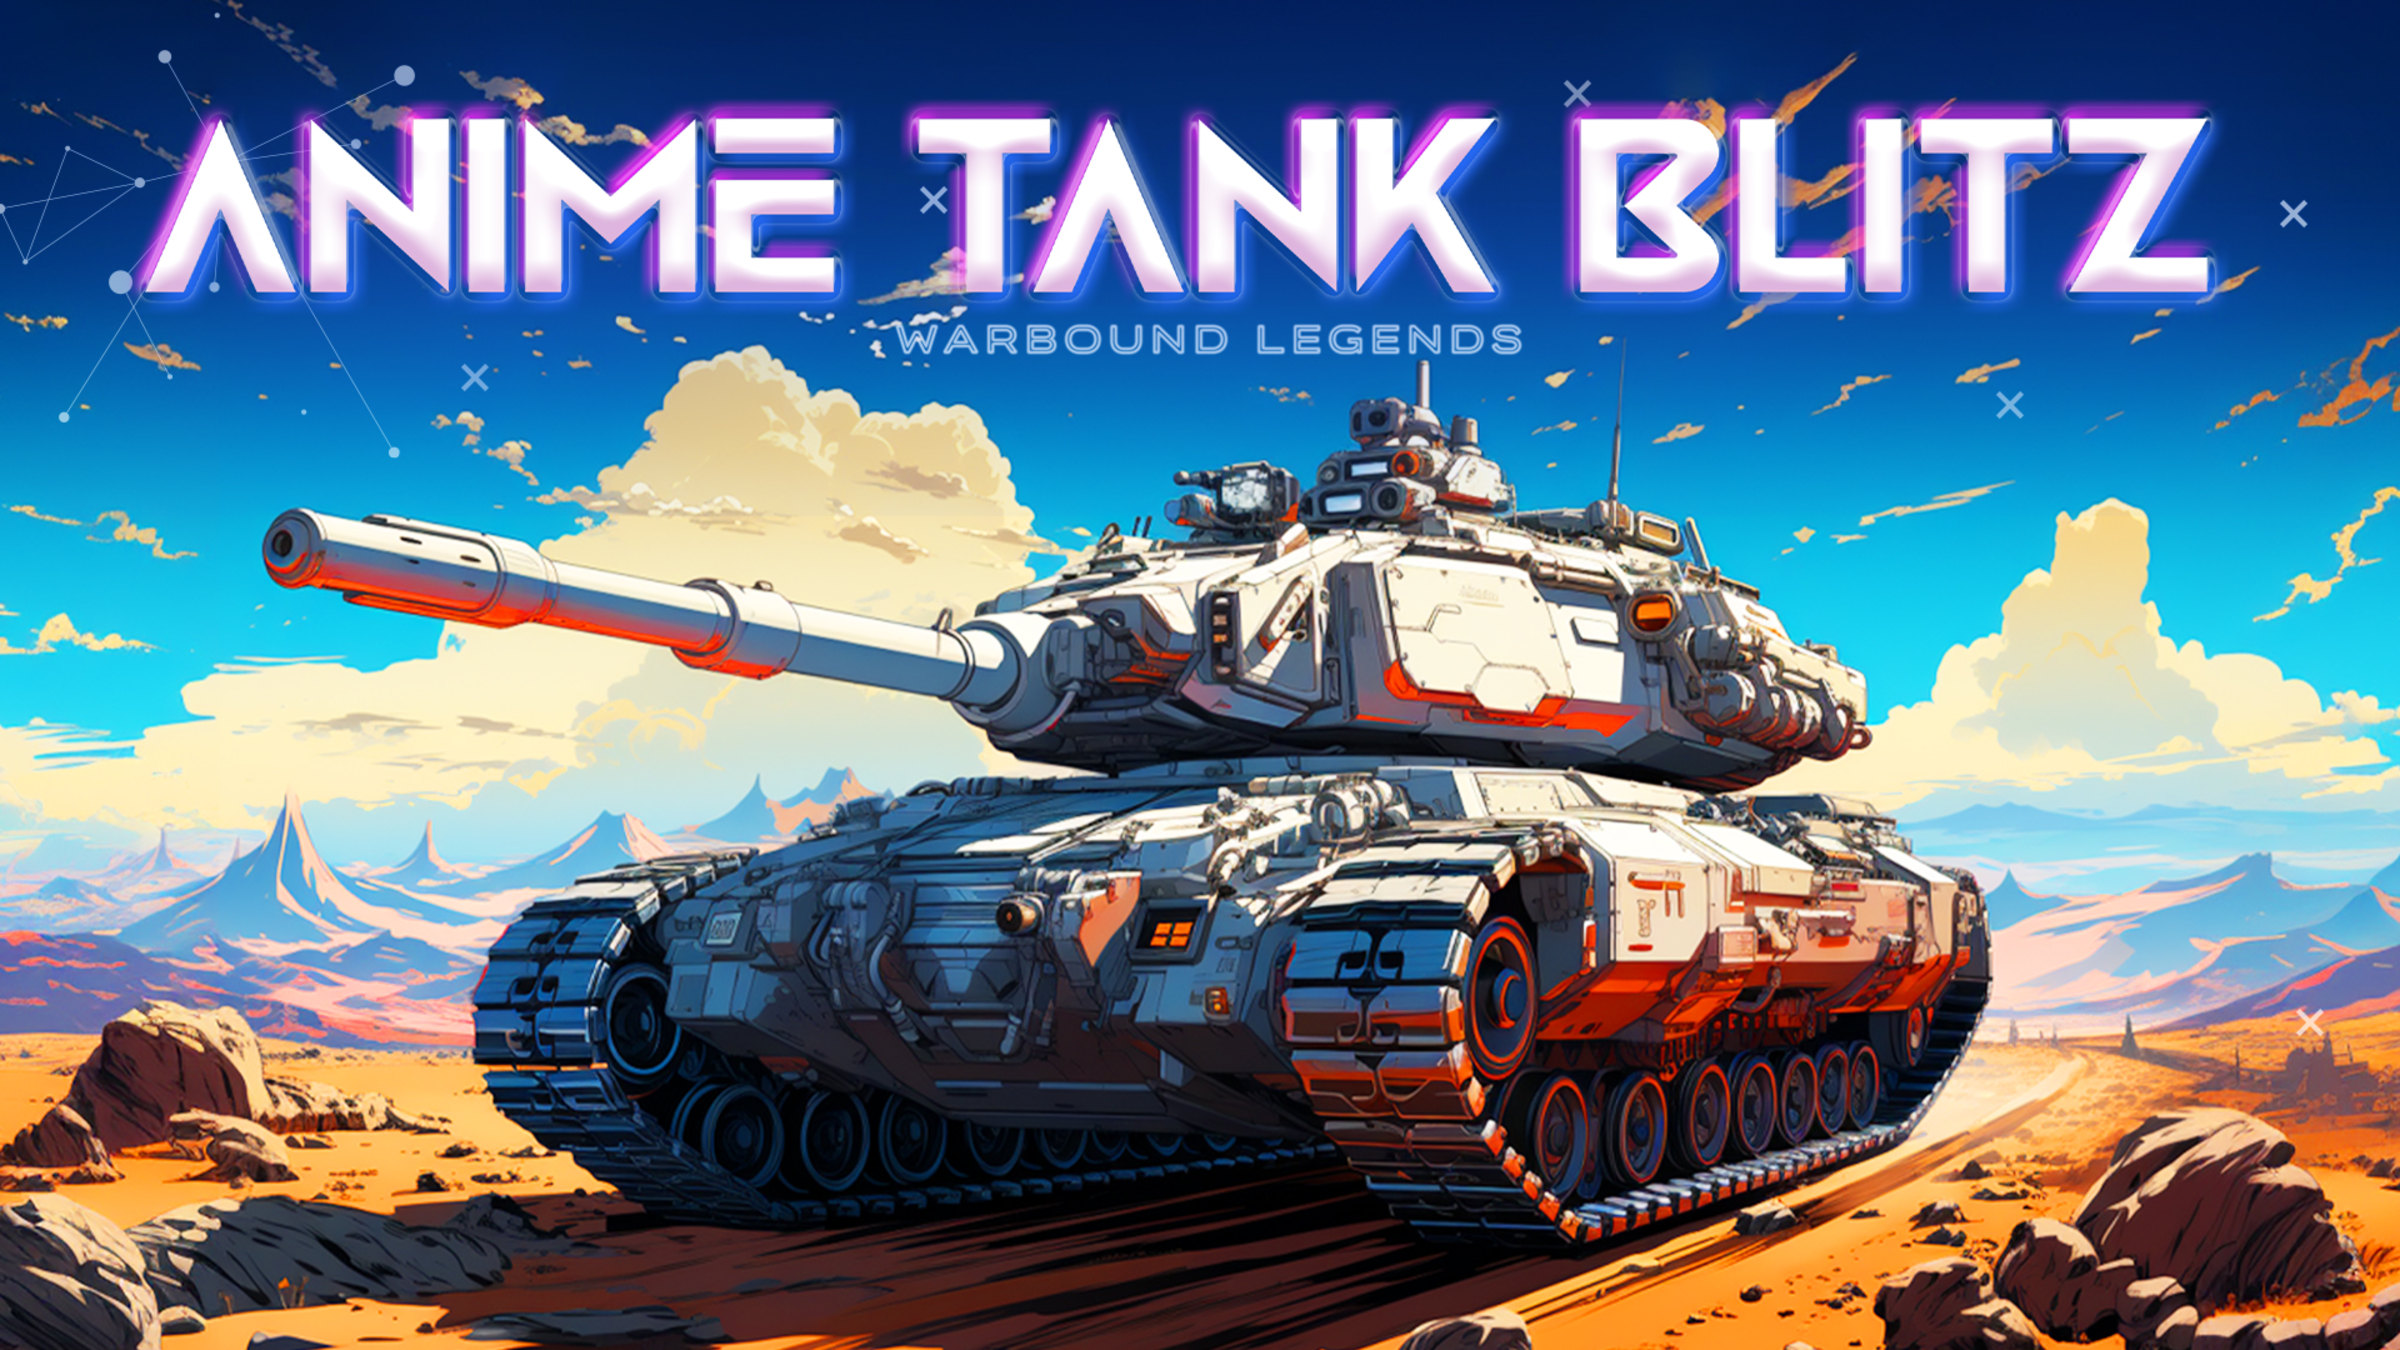 World of Tanks Blitz best tanks in each category